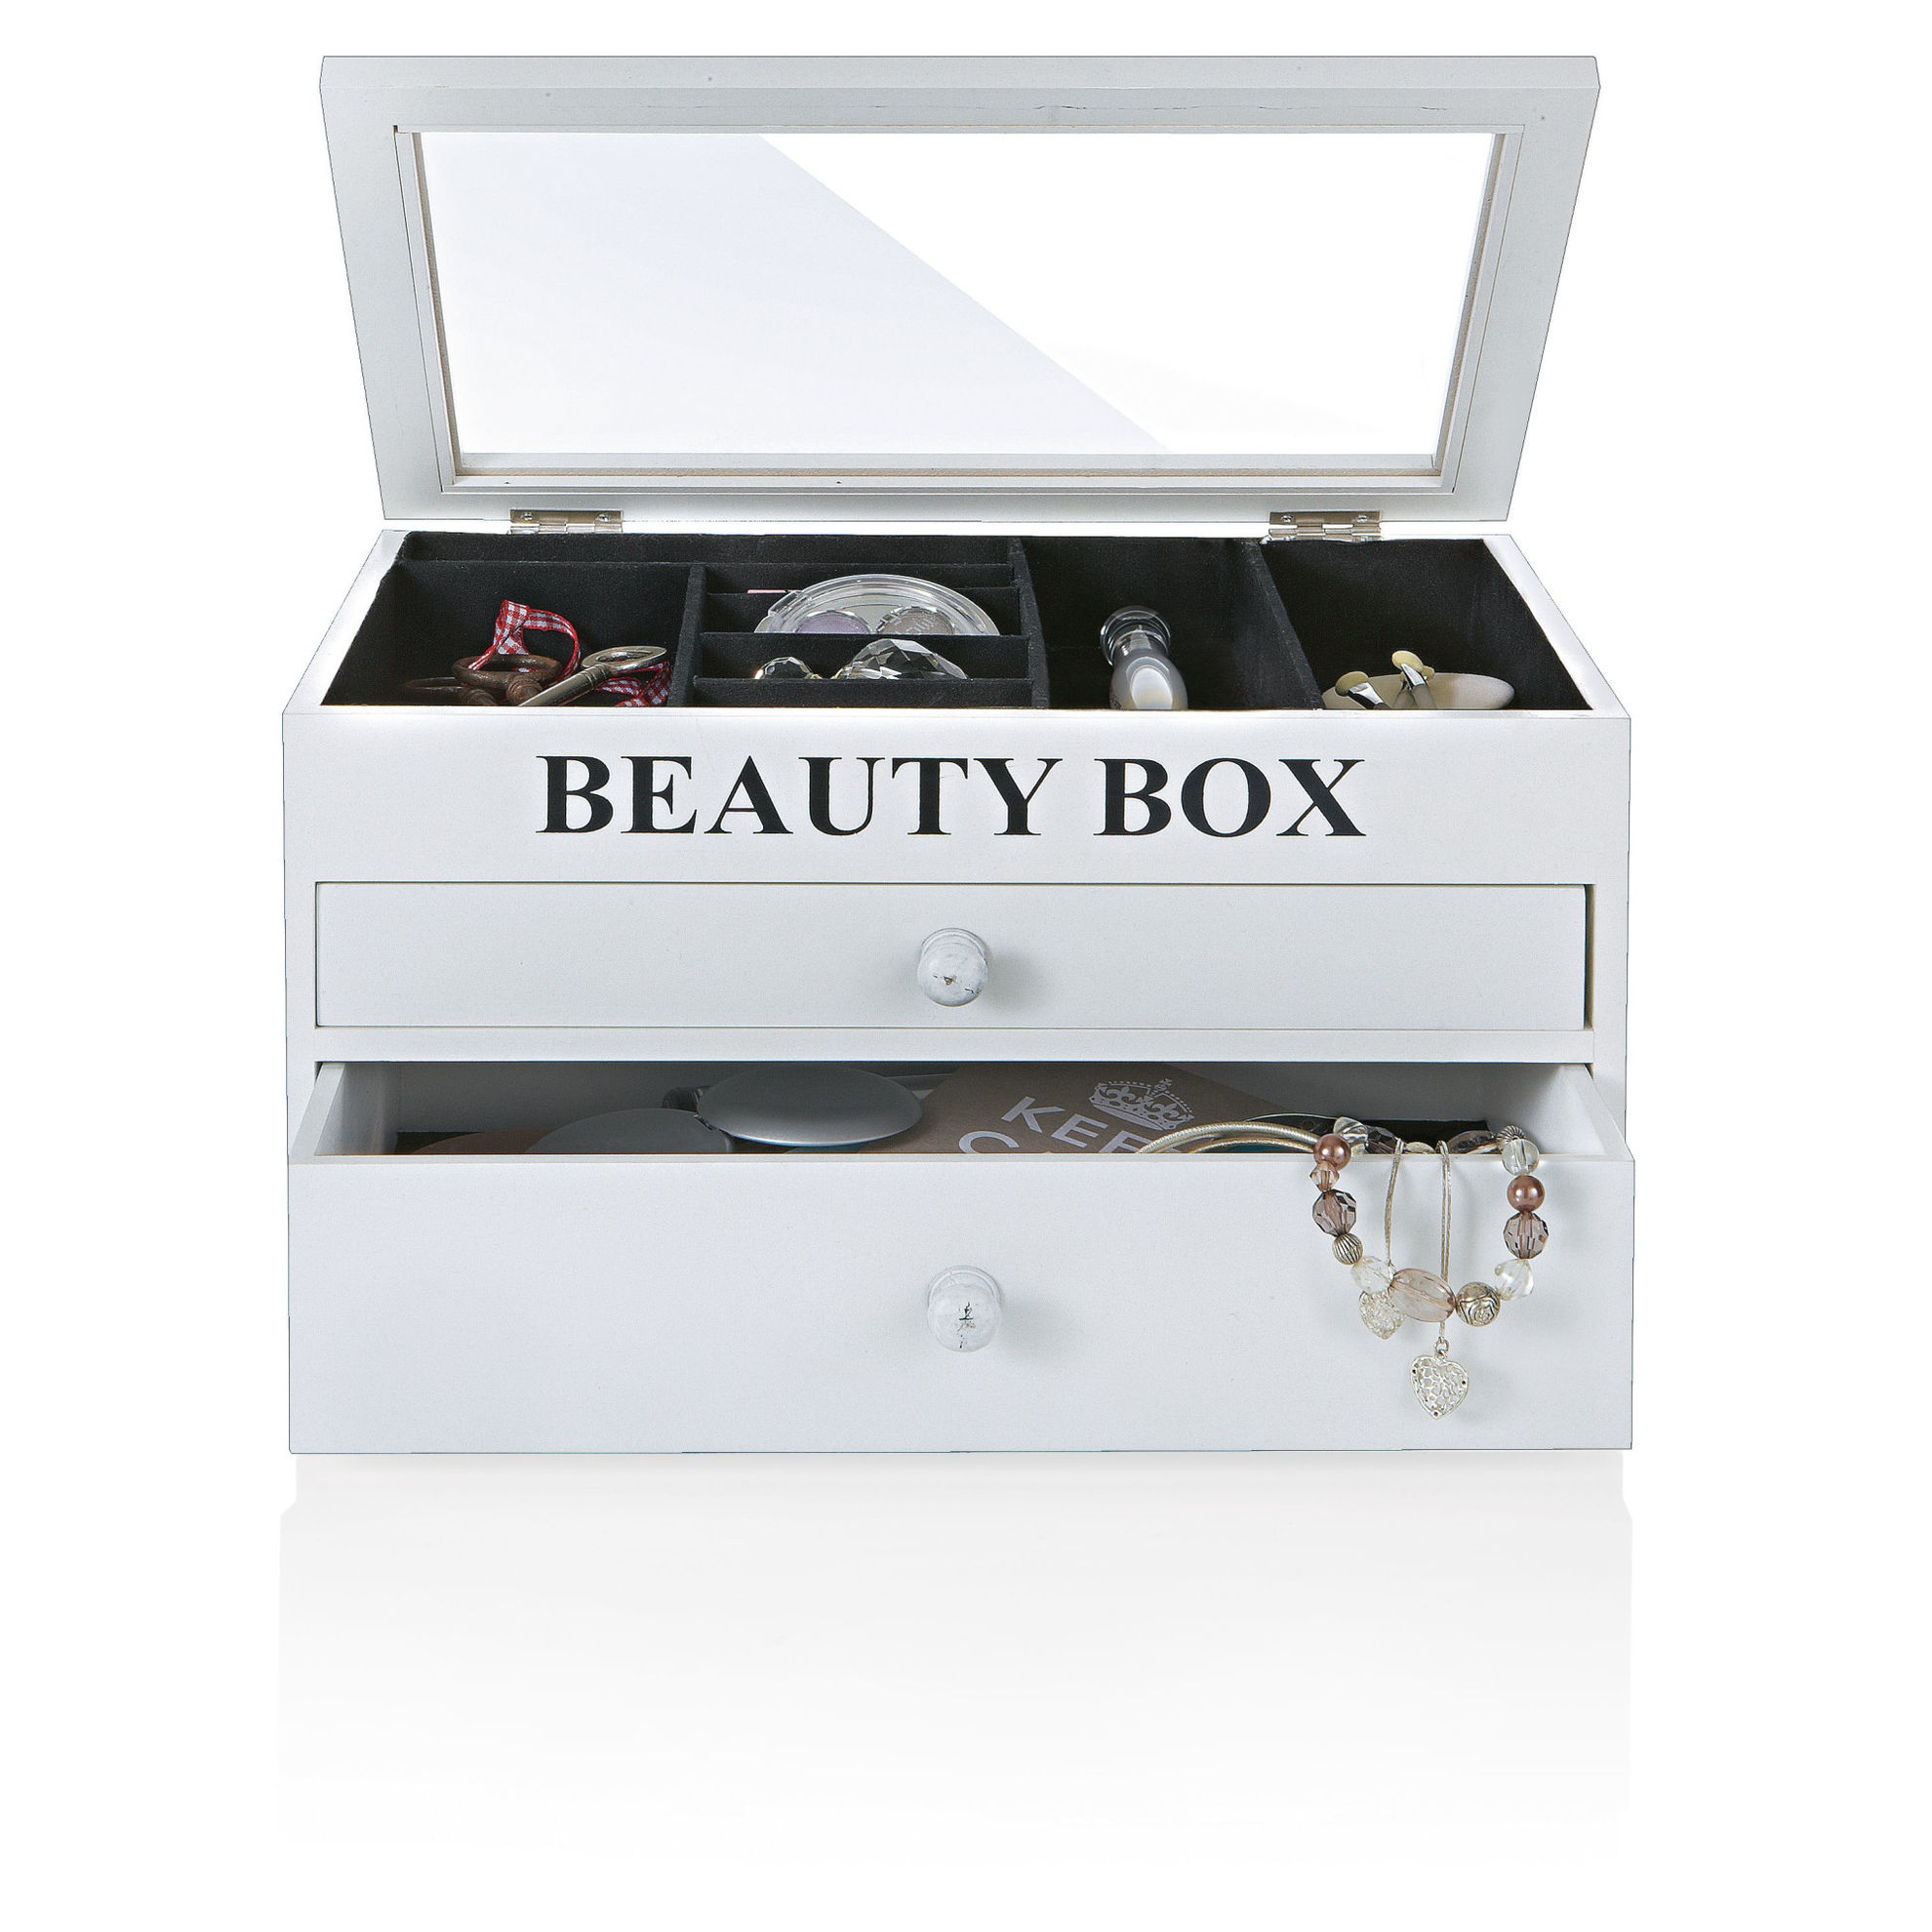 Beauty Box Weiß jetzt bei Weltbild.de bestellen